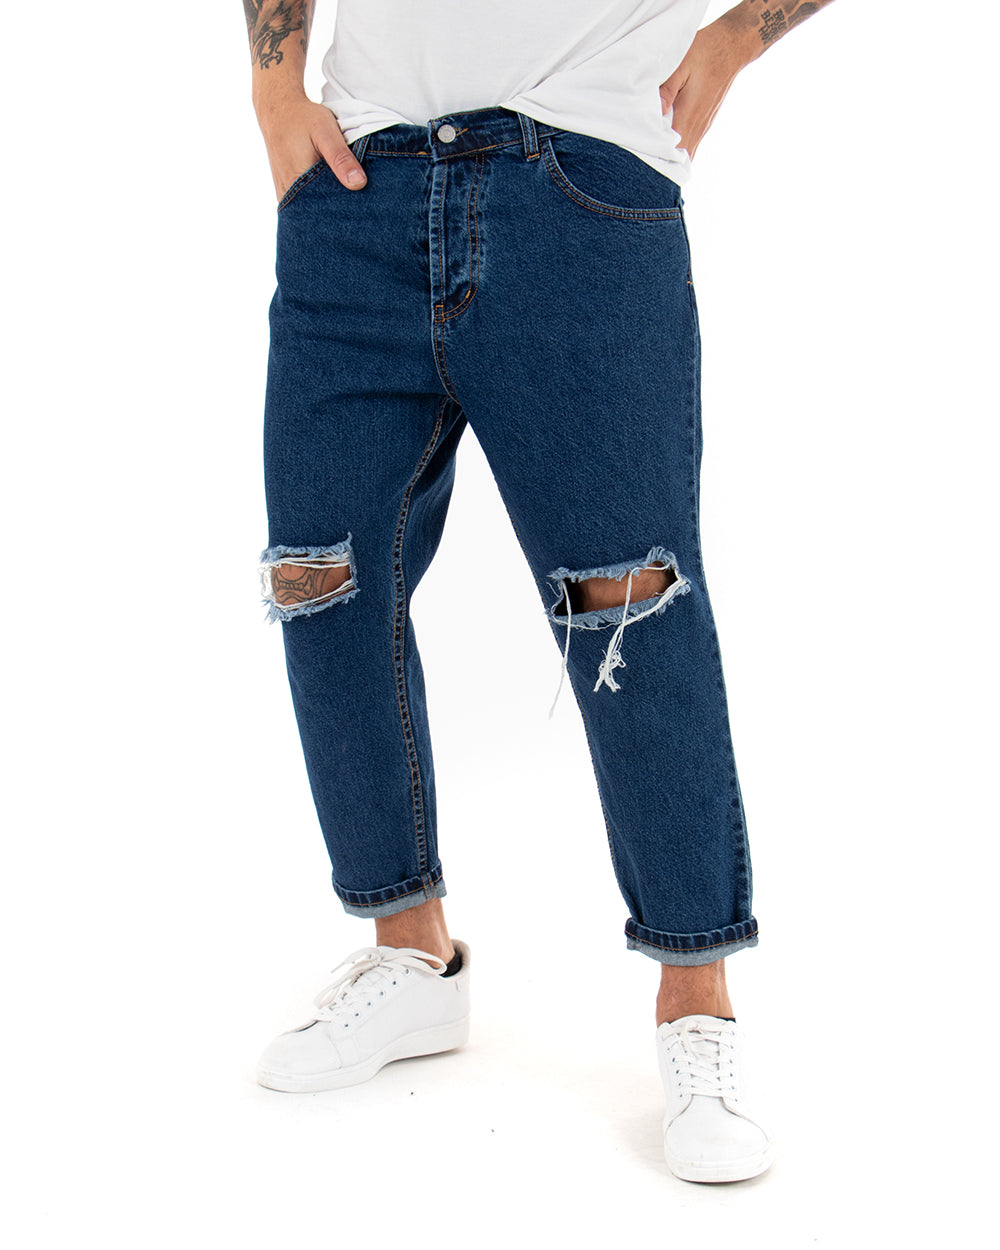 Pantaloni Jeans Uomo Loose Fit Denim Taglio Al Ginocchio Cinque Tasche Casual GIOSAL-P3019A